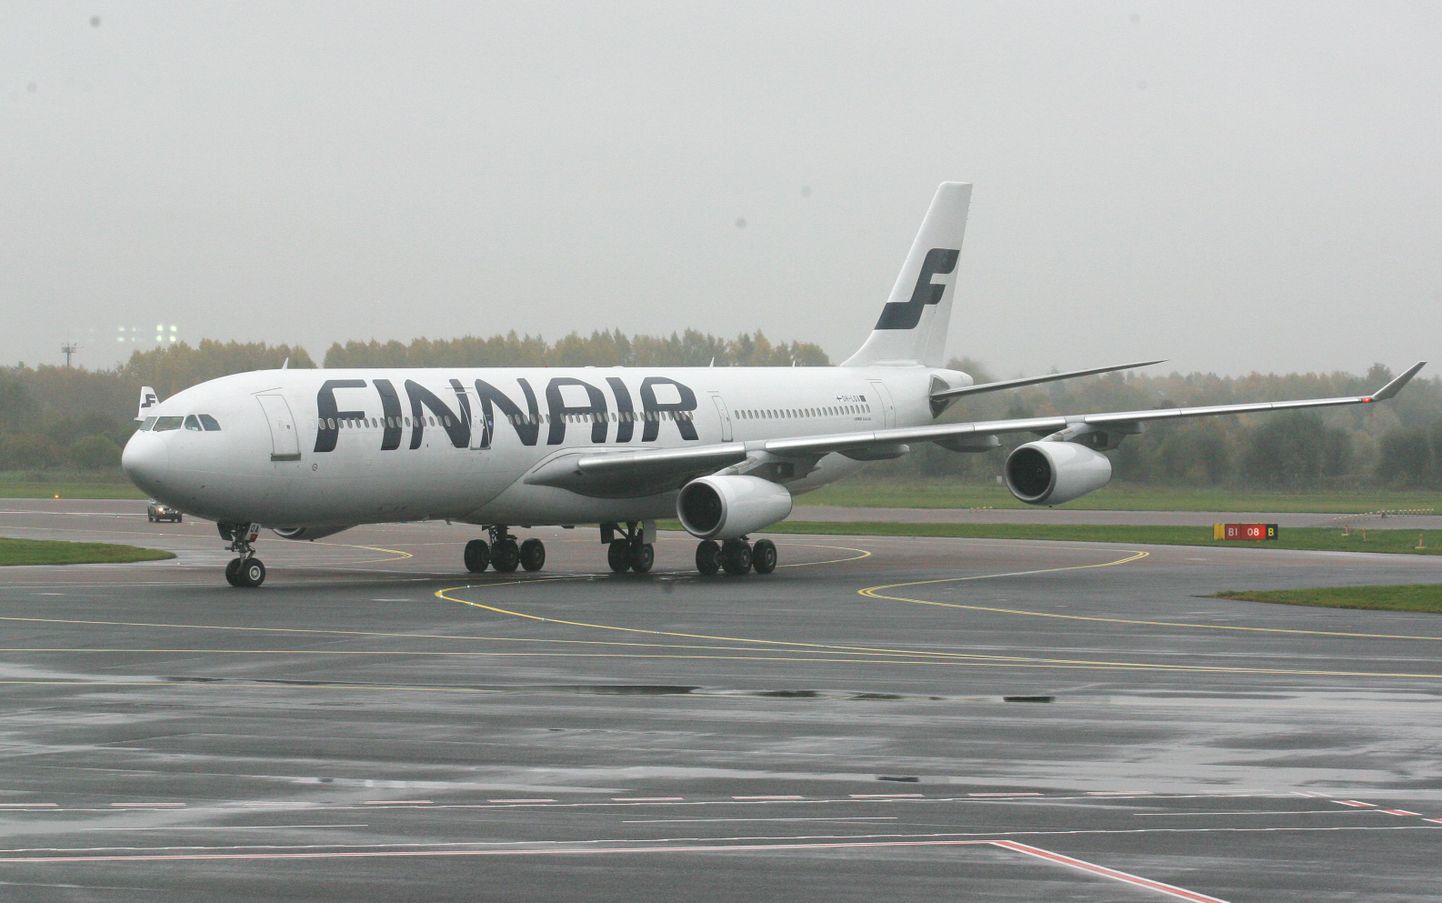 Finnairi lennufirma on maailmas vanuselt viies, see on asutatud 1923.